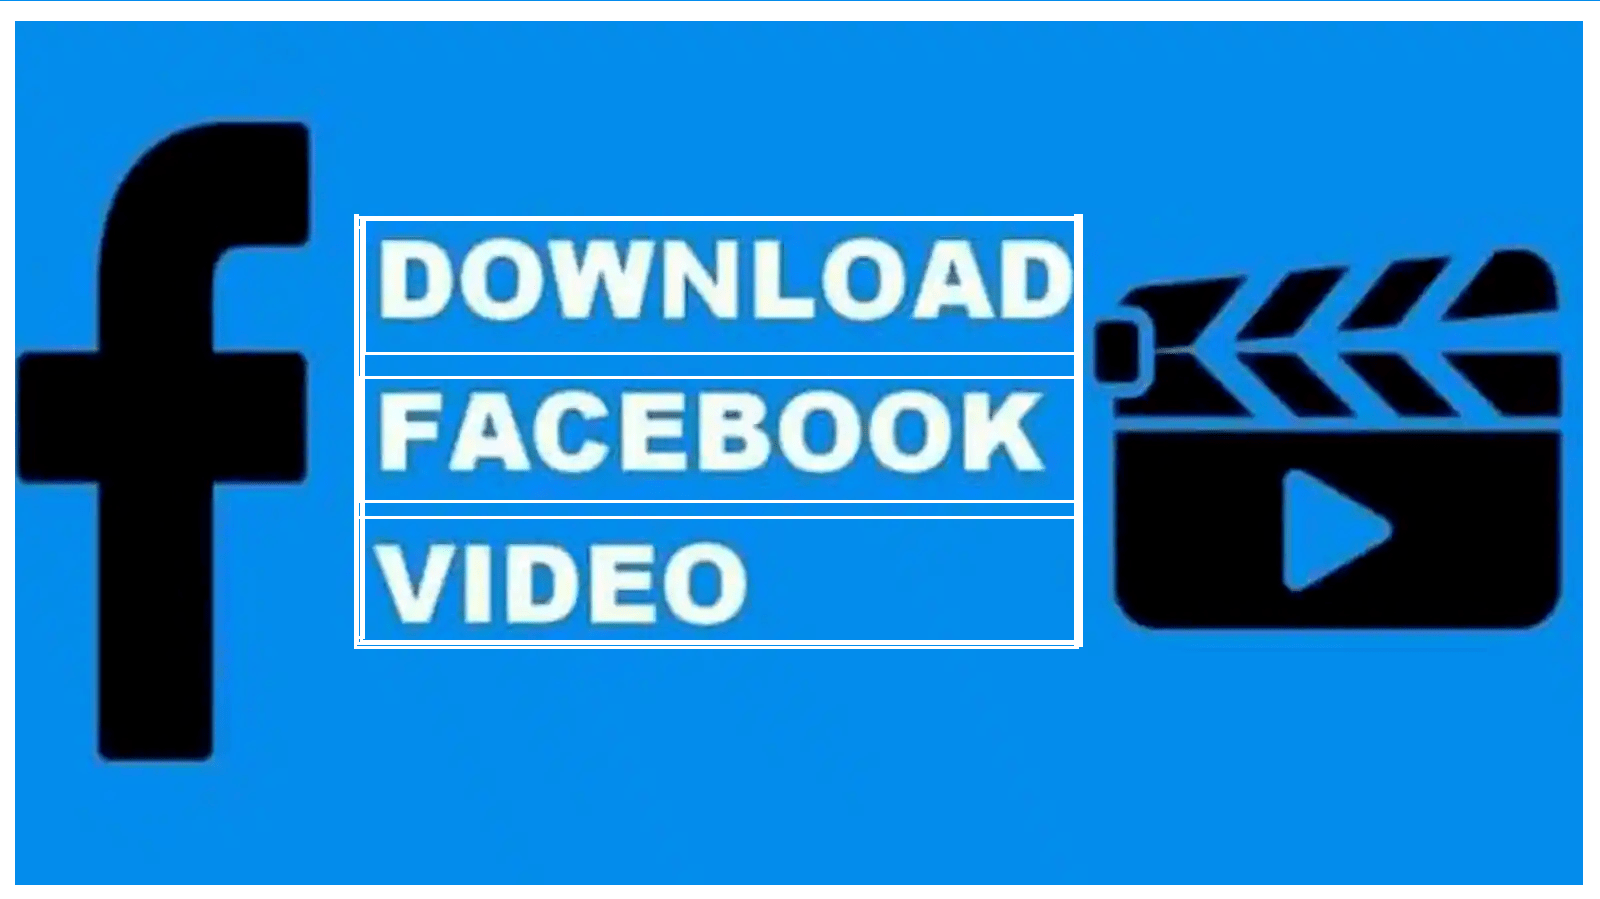 Facebook Reels & Story Video Online Downloader in HD